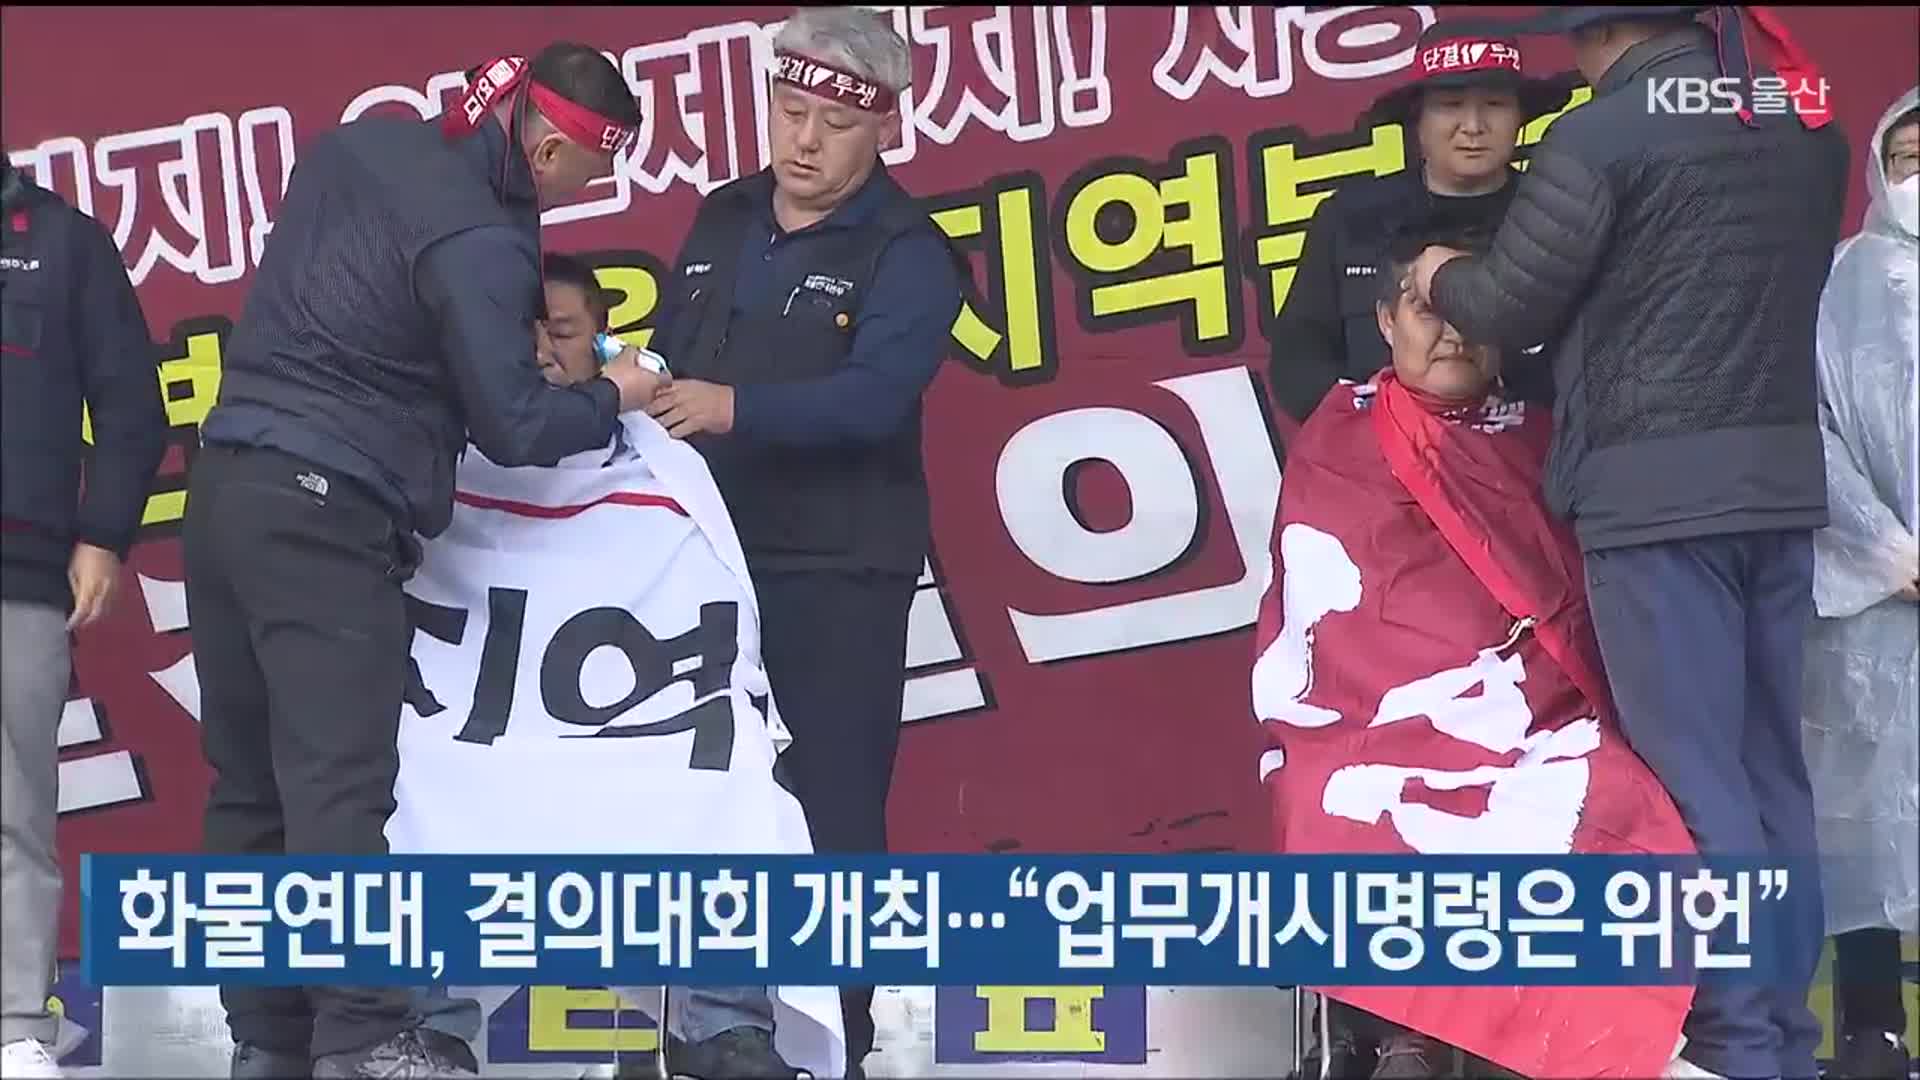 화물연대 울산본부, 결의대회 개최…“업무개시명령은 위헌”